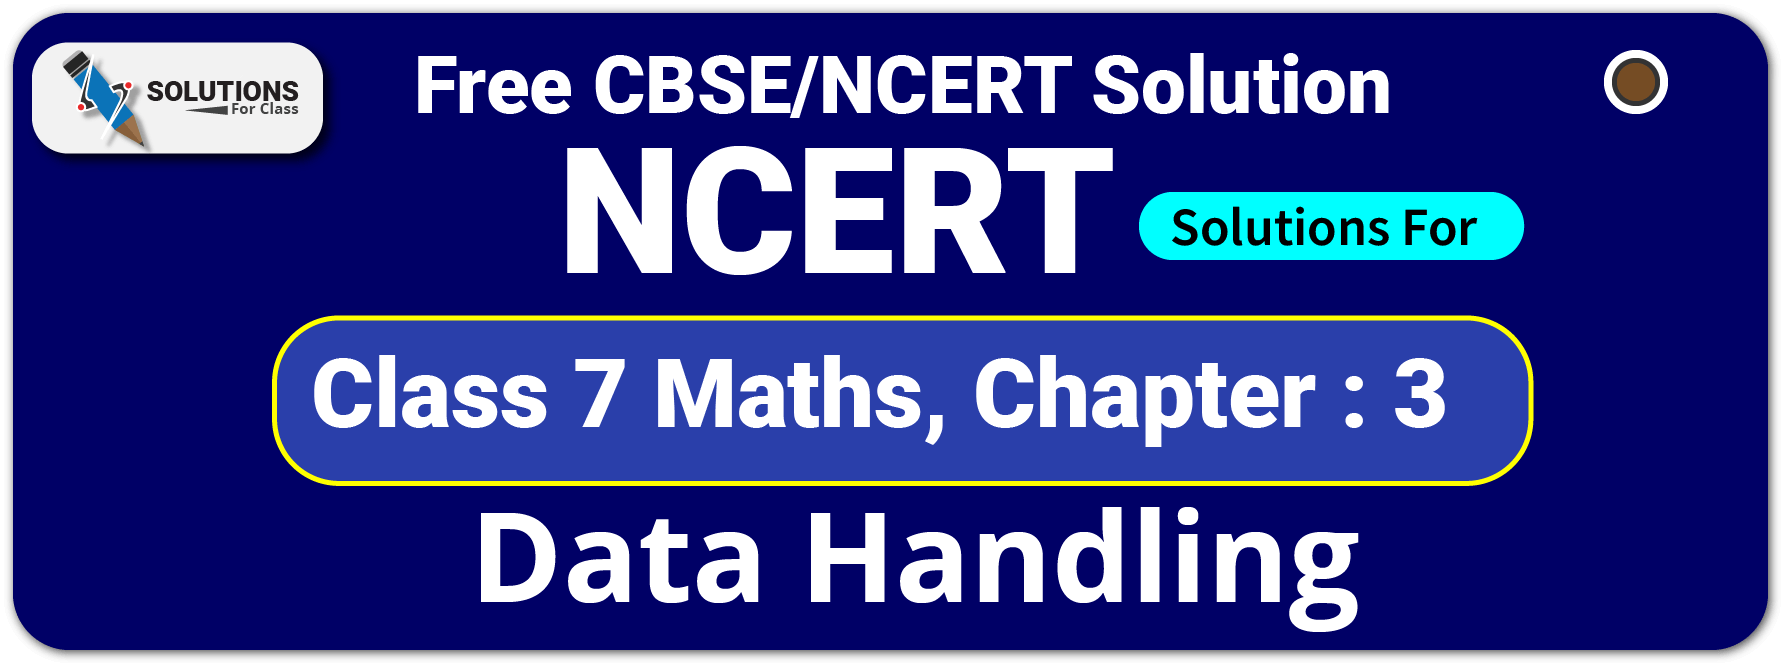 NCERT Solutions For Class 7 Maths Chapter 3, Data Handling